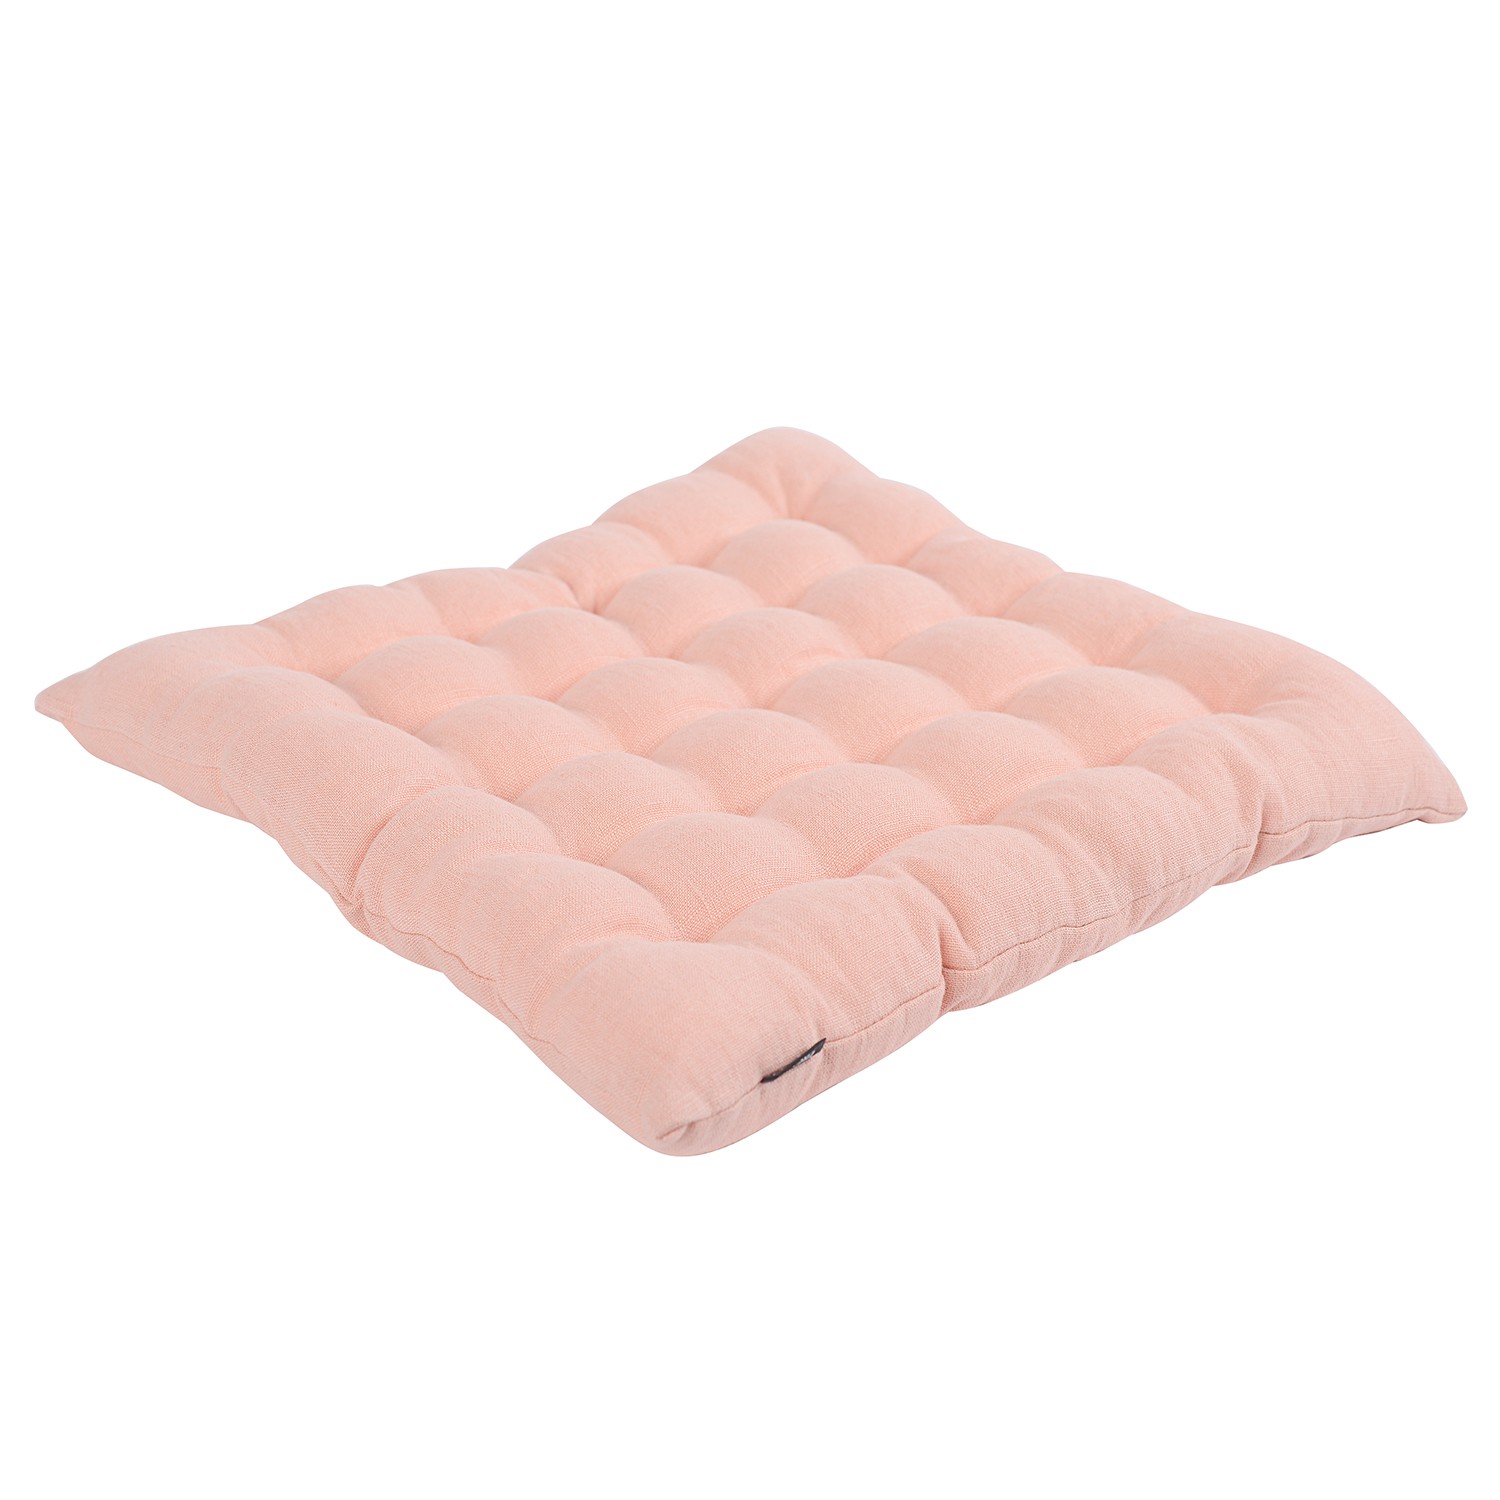 Подушка стеганая на стул из умягченного льна розово-пудрового цвета из коллекции essential, 40х40 см